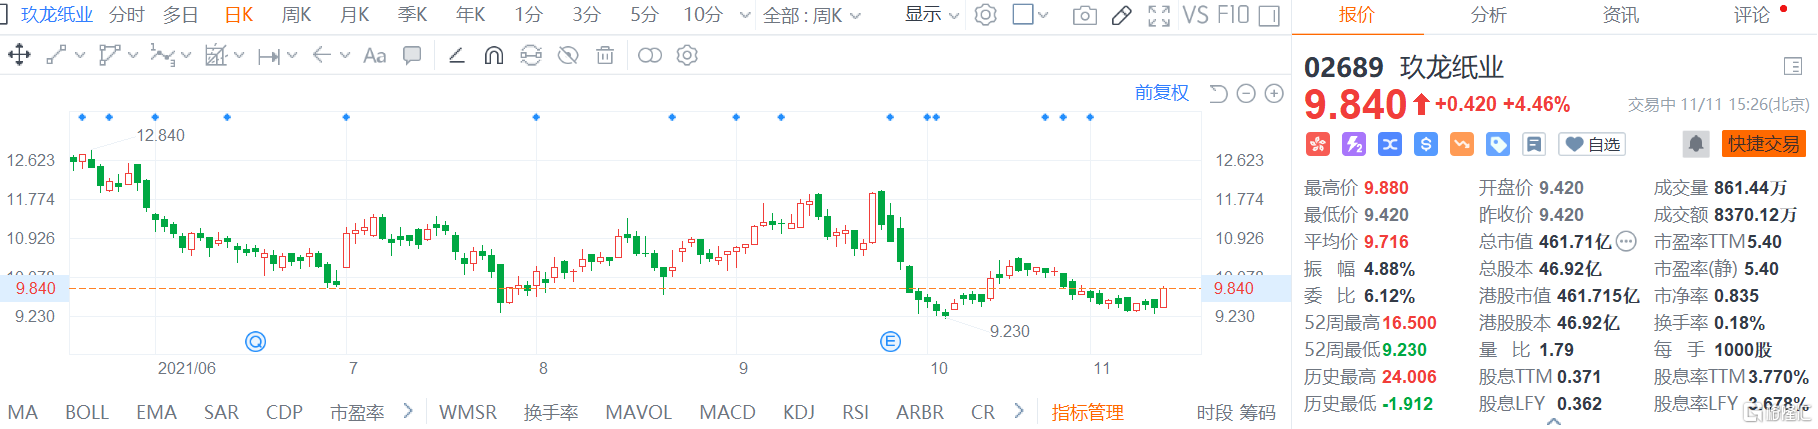 玖龙纸业(2689.HK)股价高位震荡，现报9.84港元